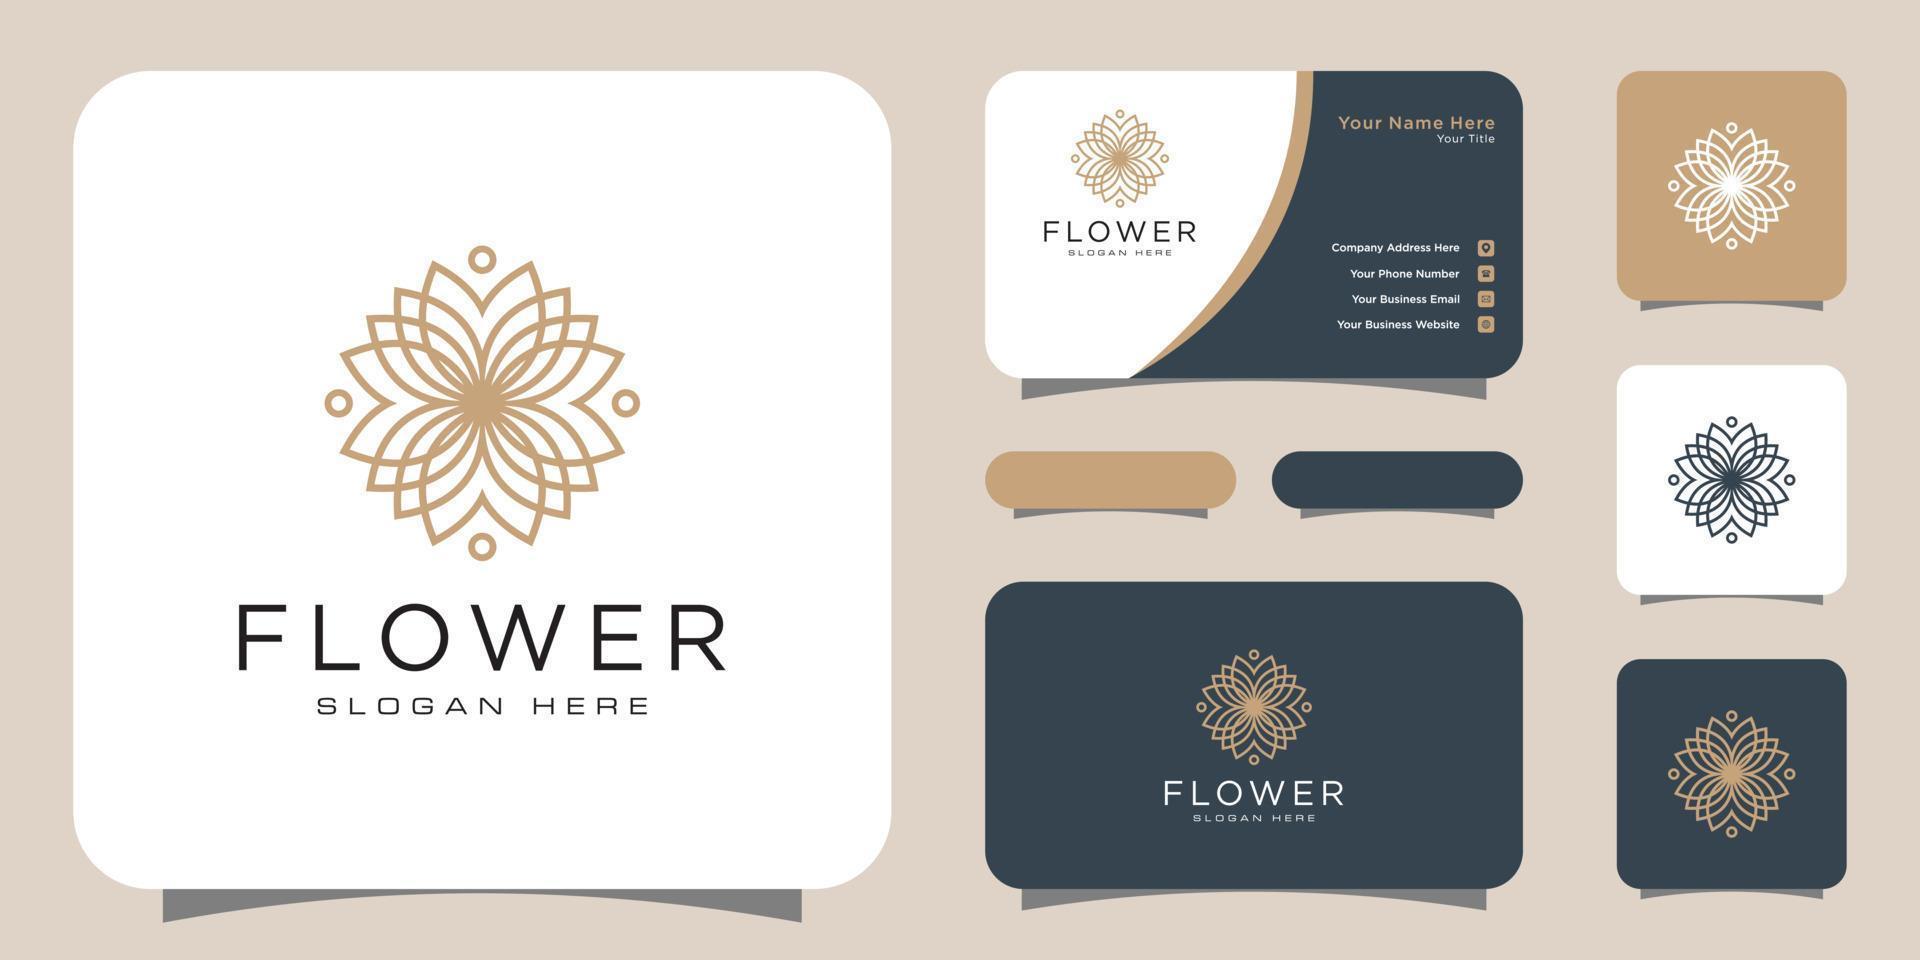 Flor com logotipo de luxo da linha mono com design de cartão de visita vetor